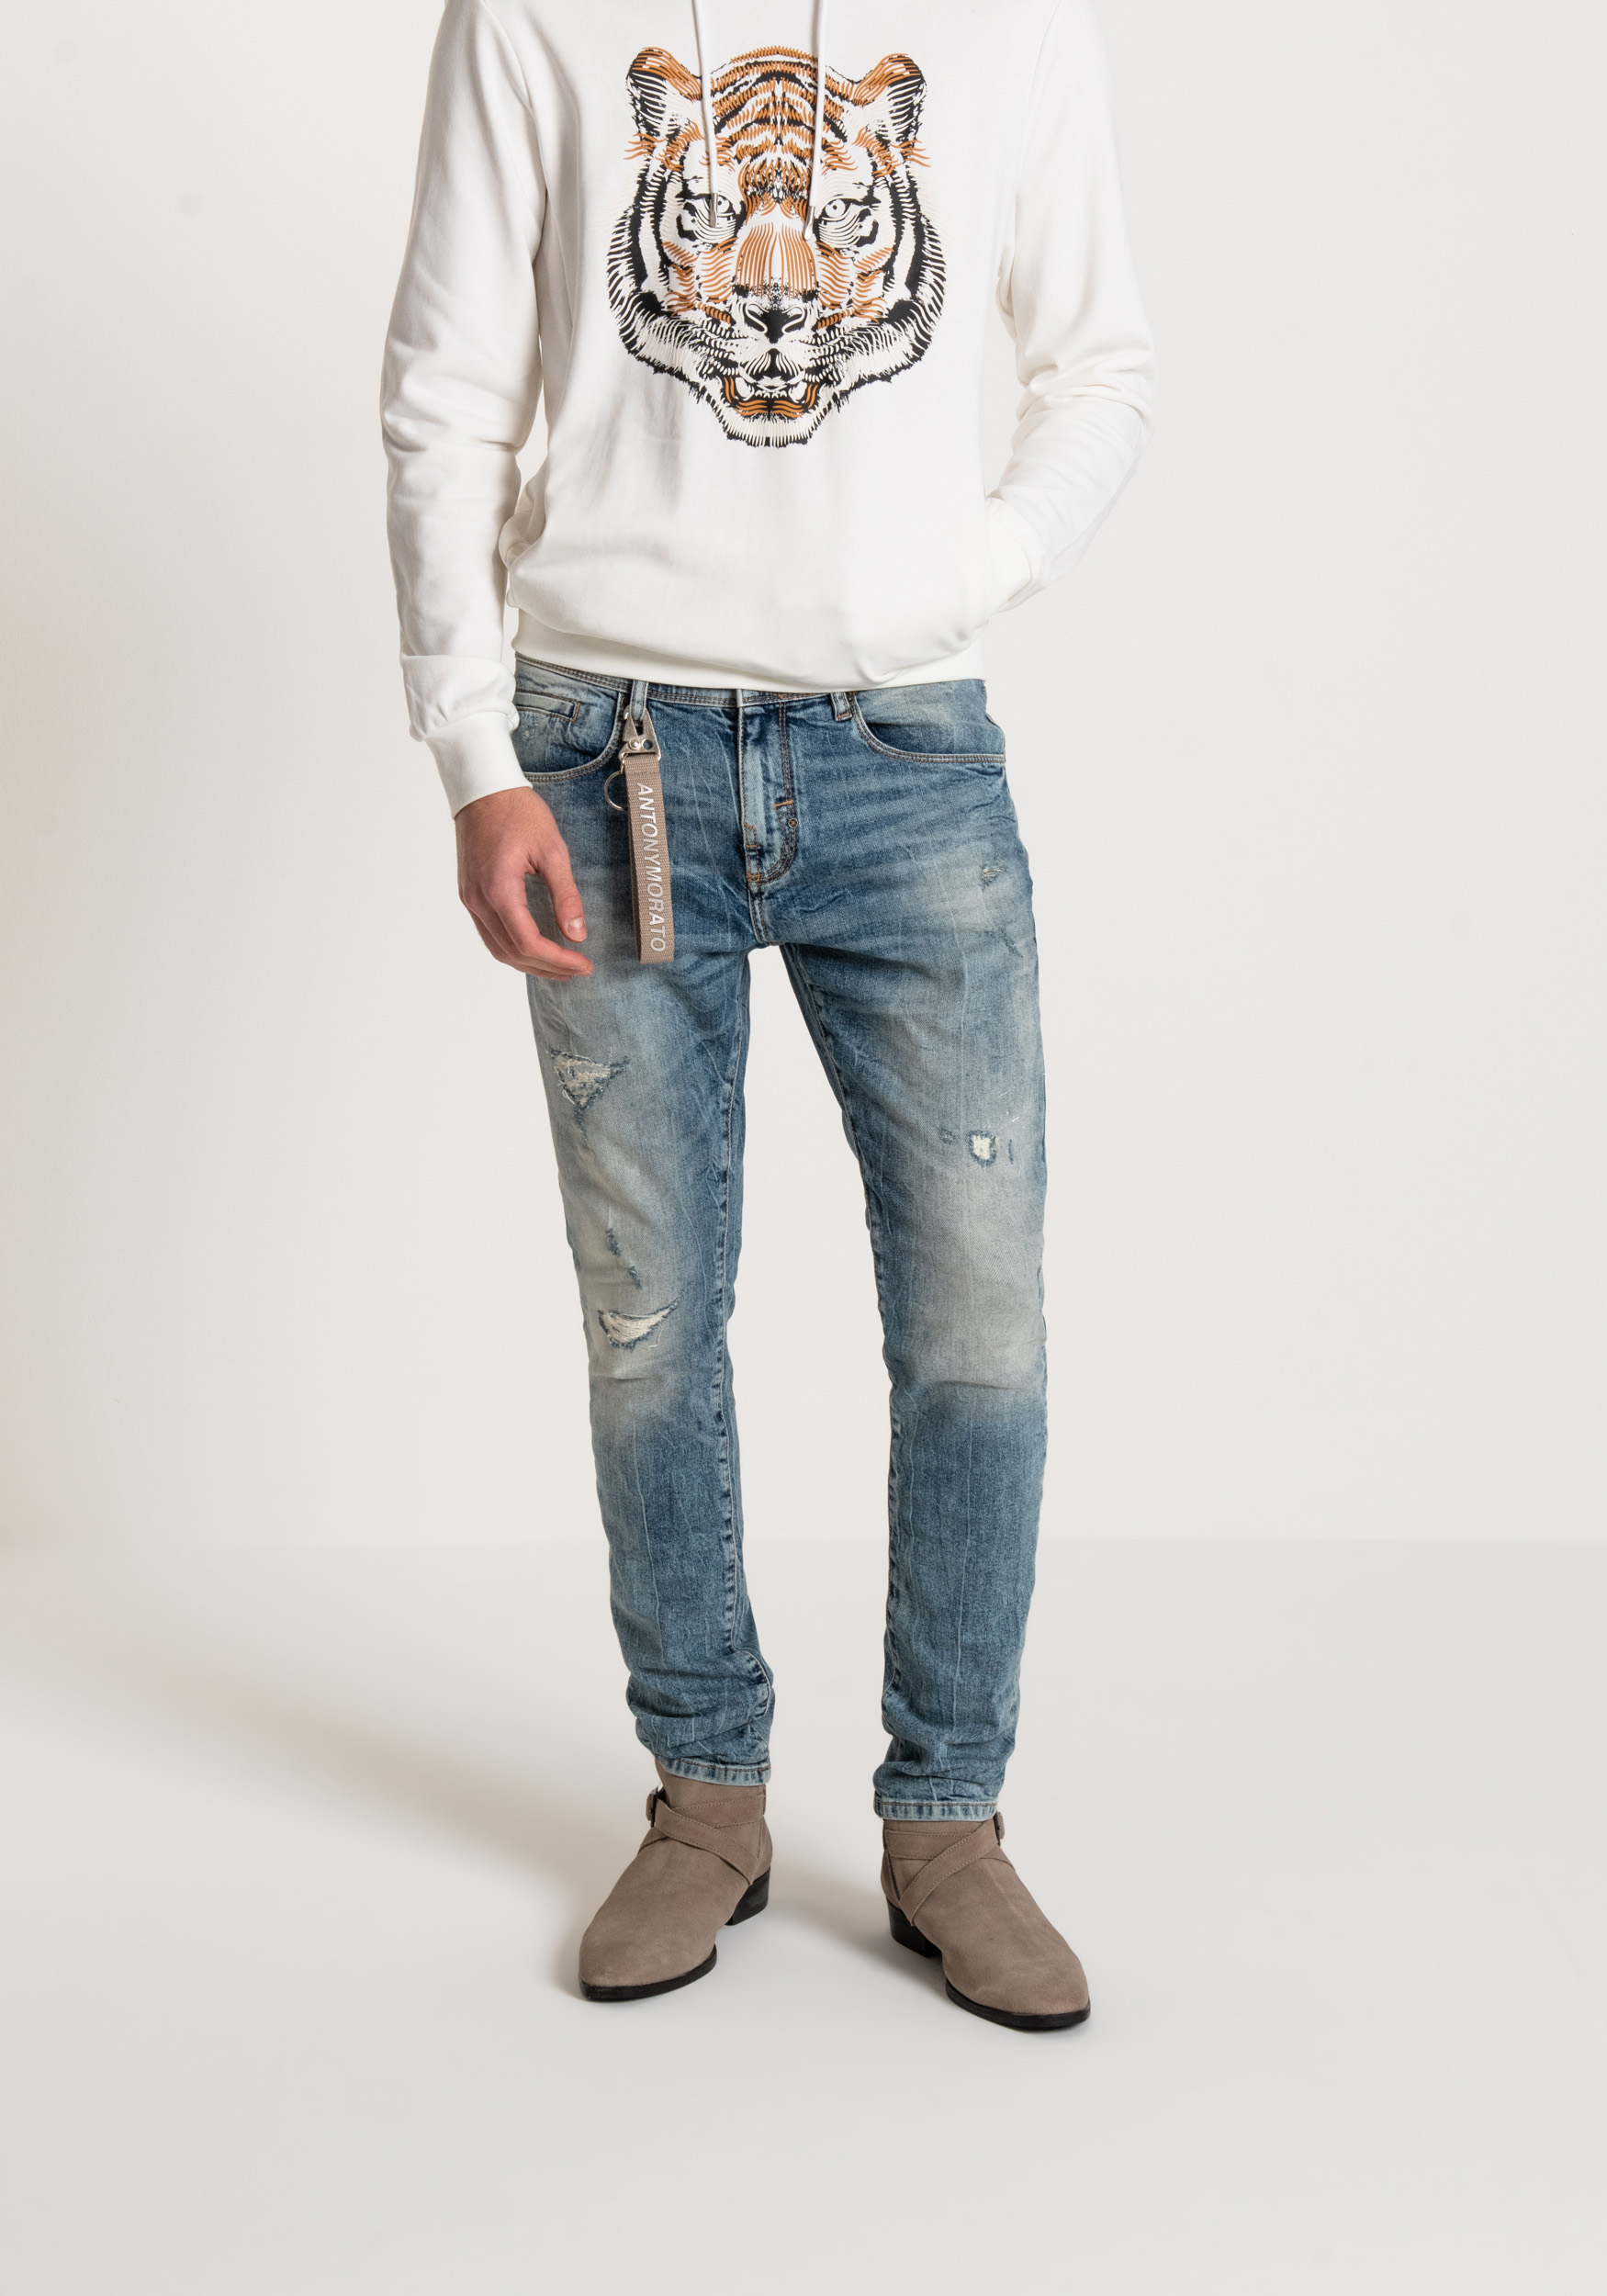 JEANS CARROT FIT “KENNY” CON RAMMENDI E SCHIZZI DI VERNICE - Jeans | Antony Morato Online Shop